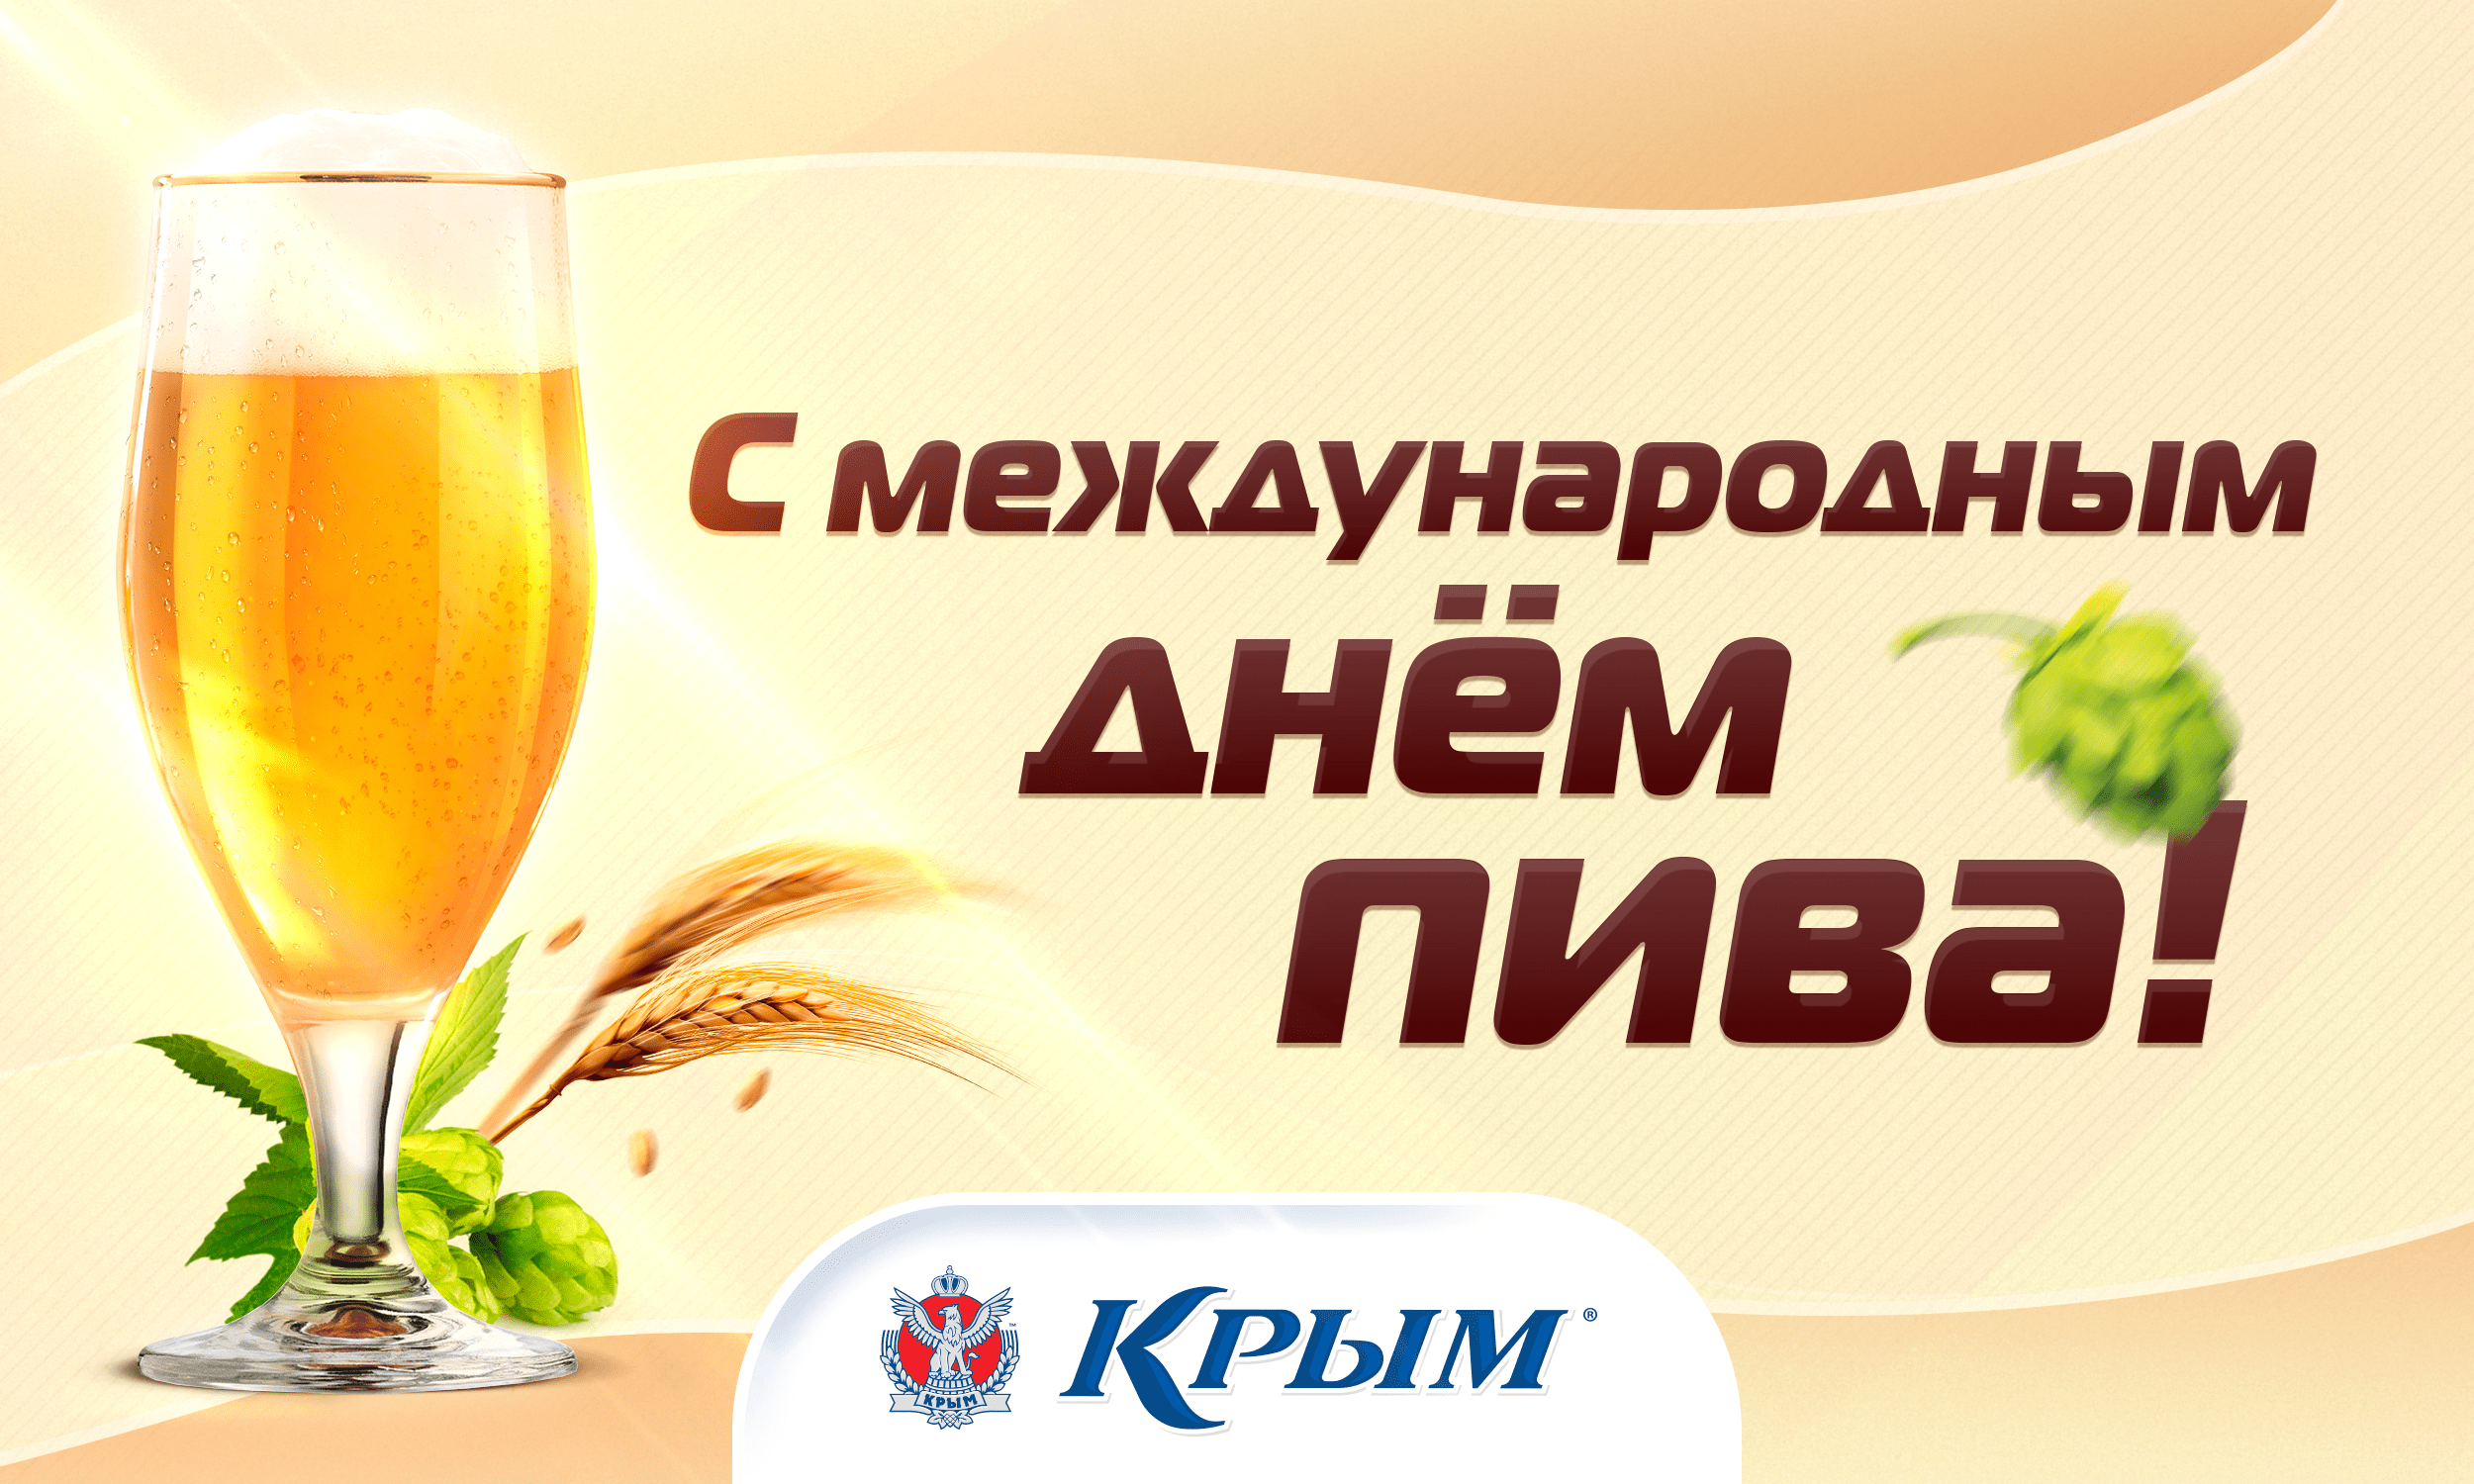 Международный день пива в россии - идеи праздника